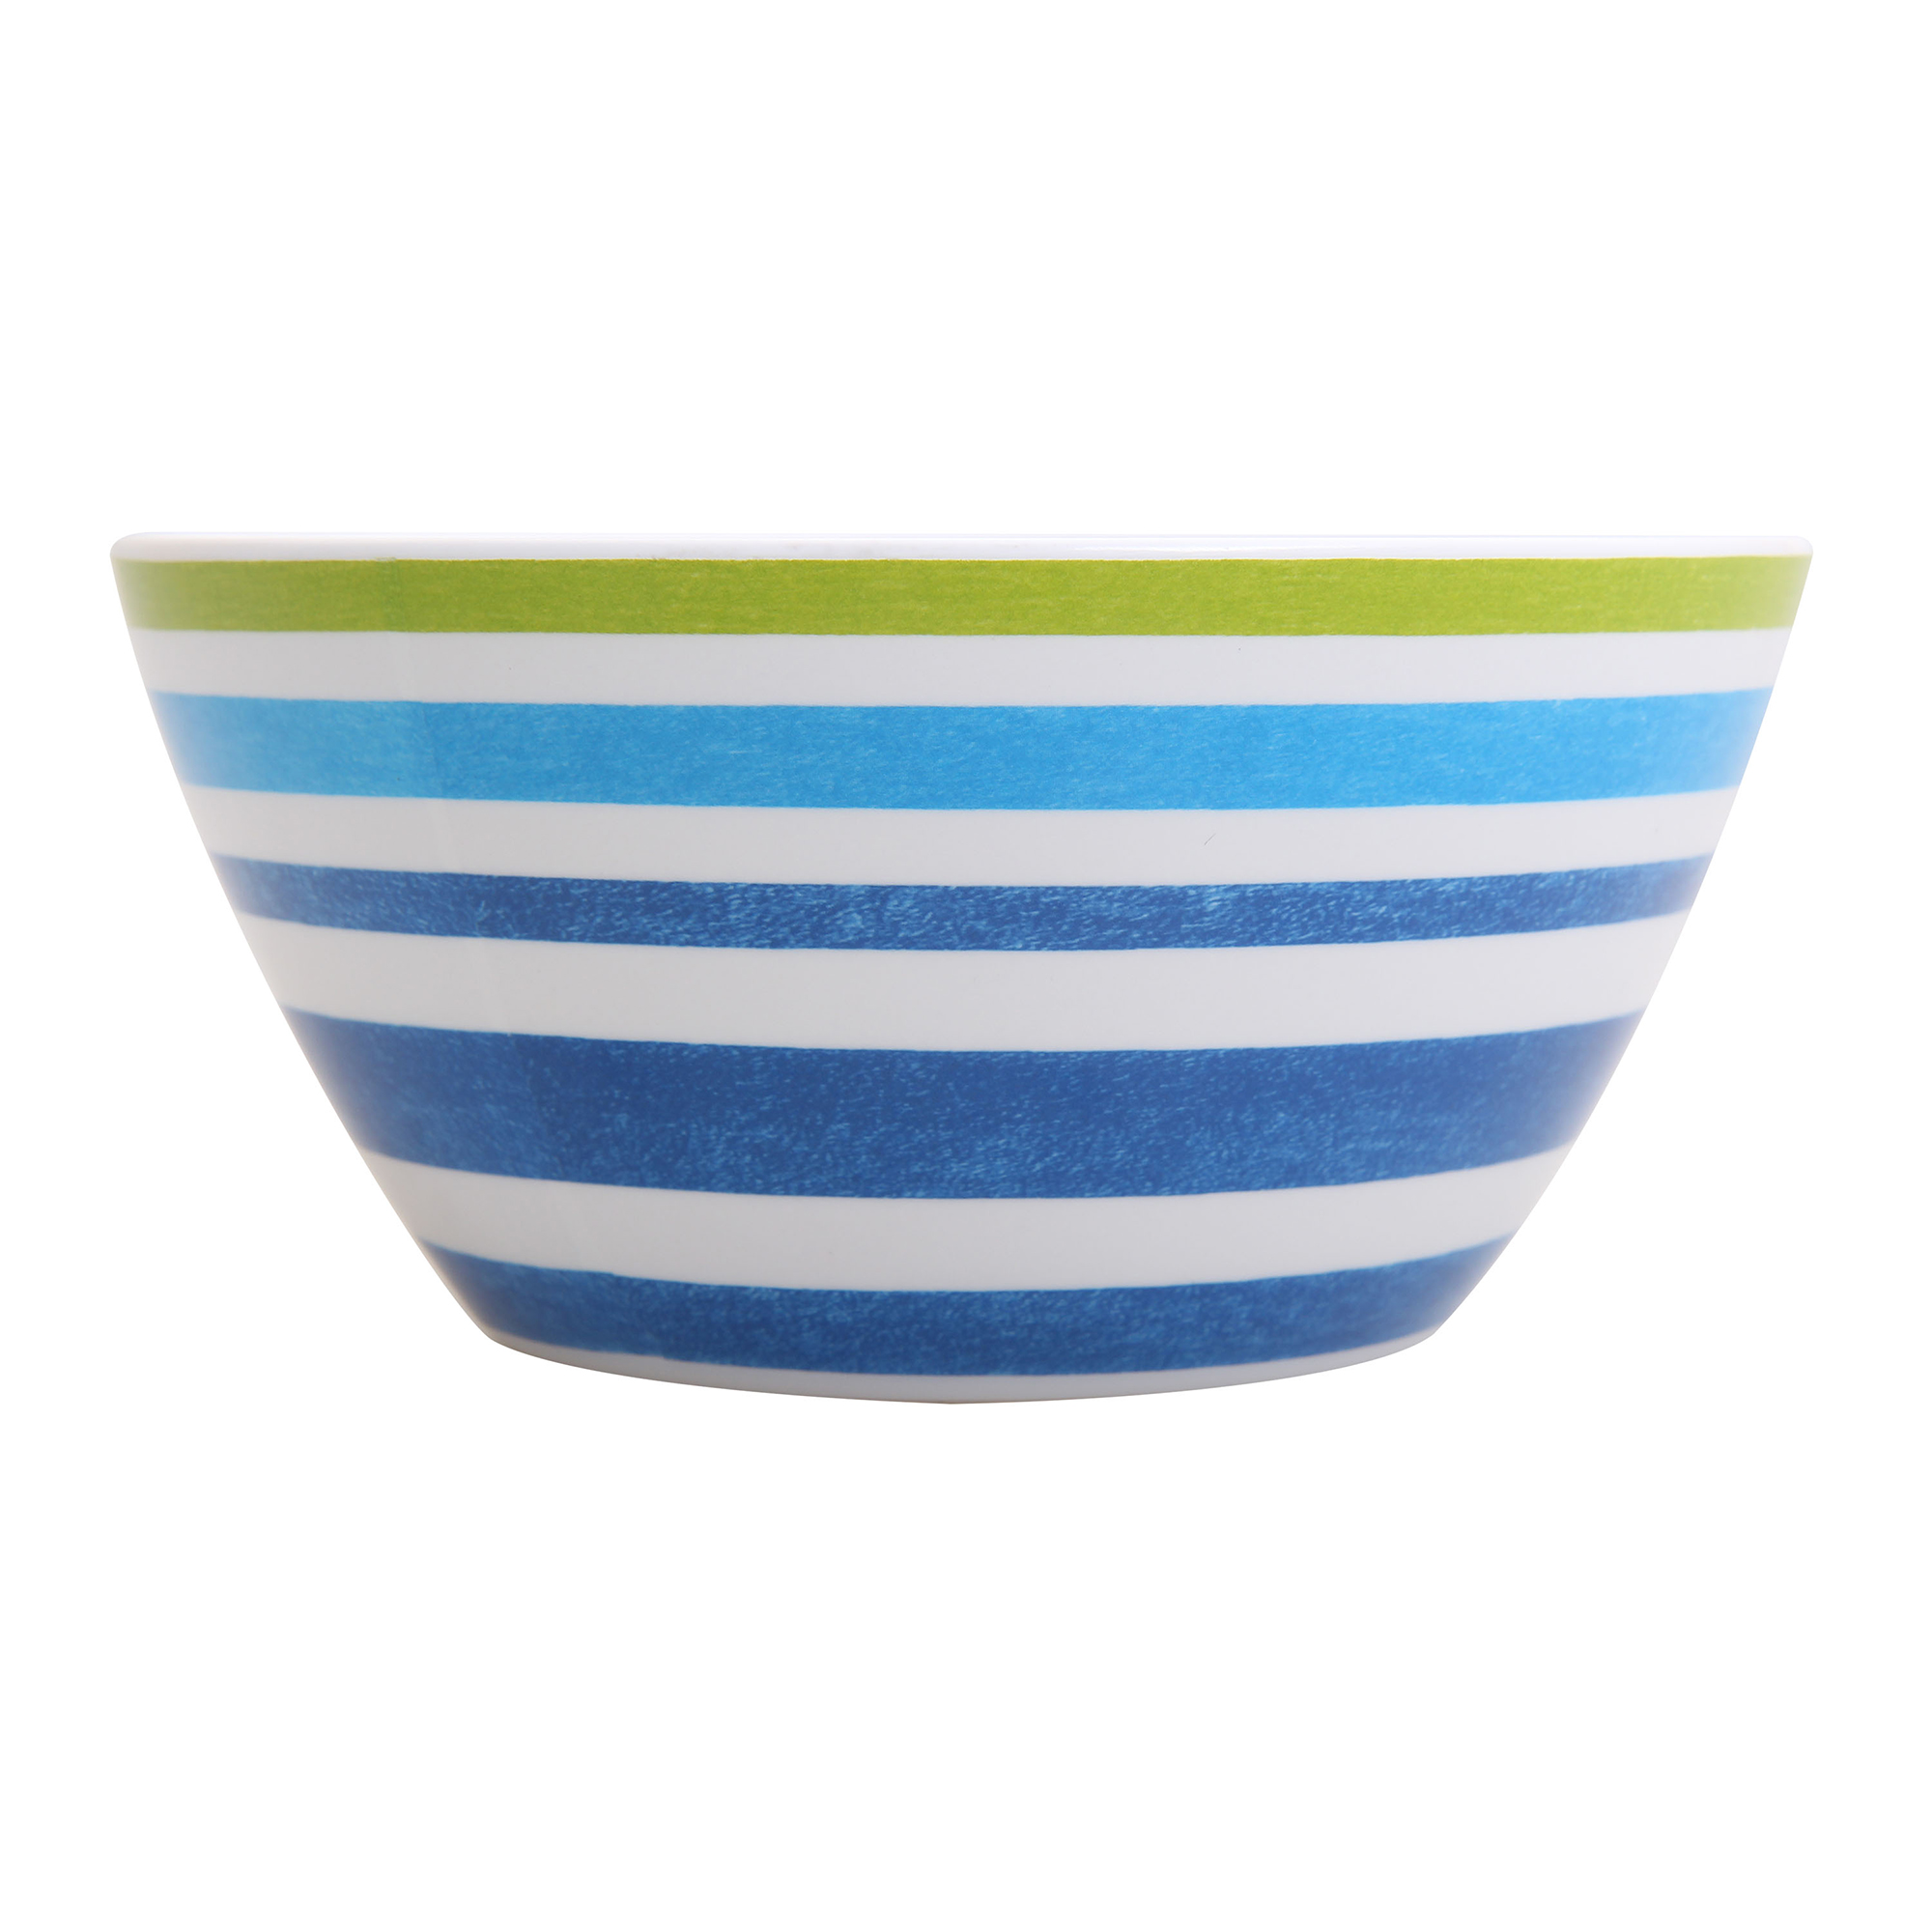 Mainstays Kids Melamine Blue Striped Bowls, Set of 6 - image 4 of 5